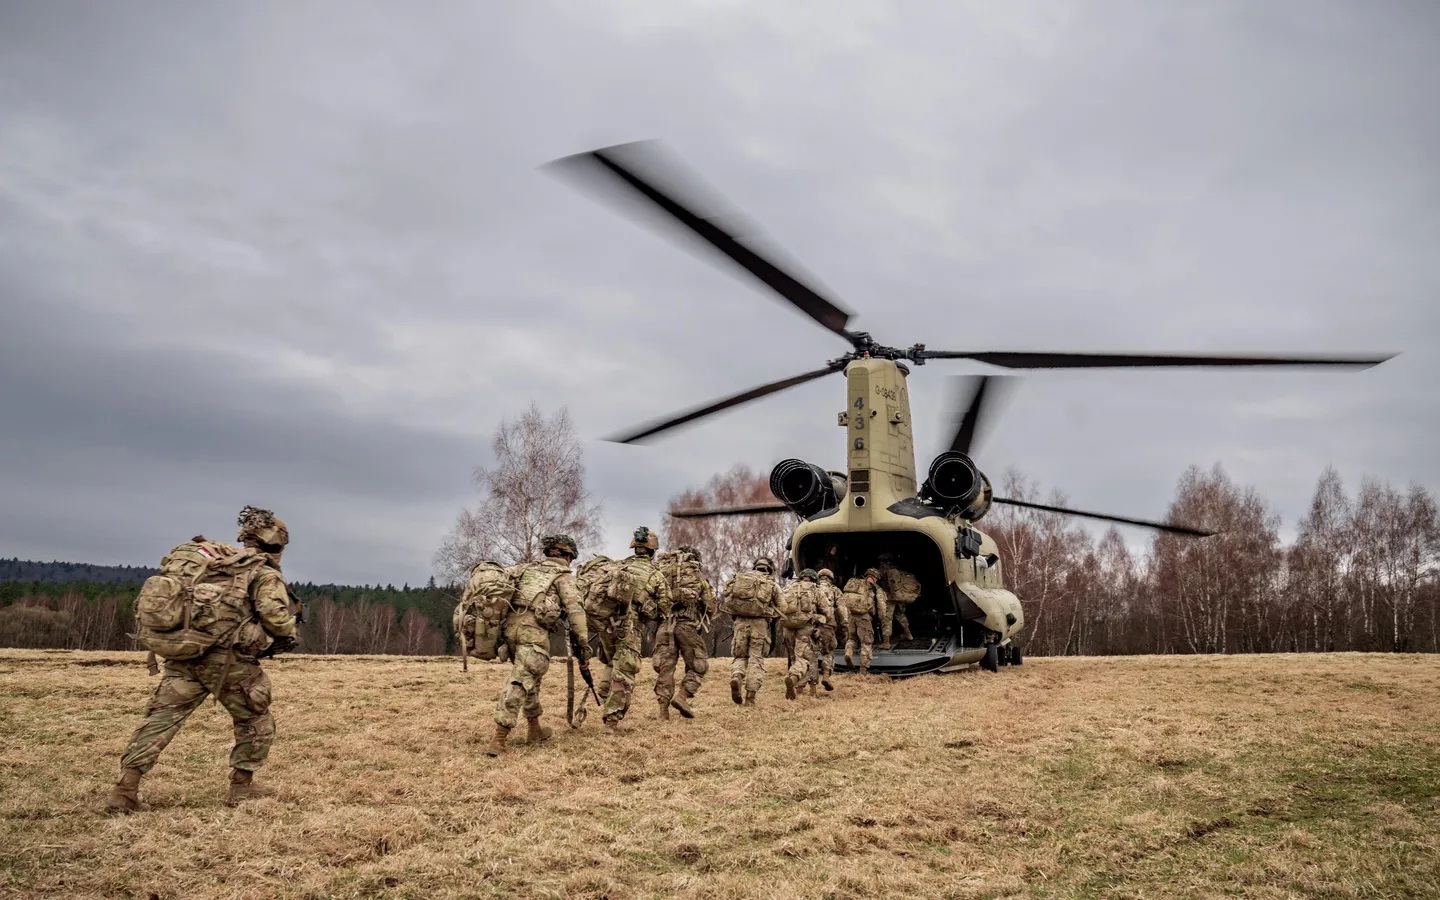 Thiết bị quân sự Mỹ-NATO được phát hiện ở biên giới Nga-Phần Lan